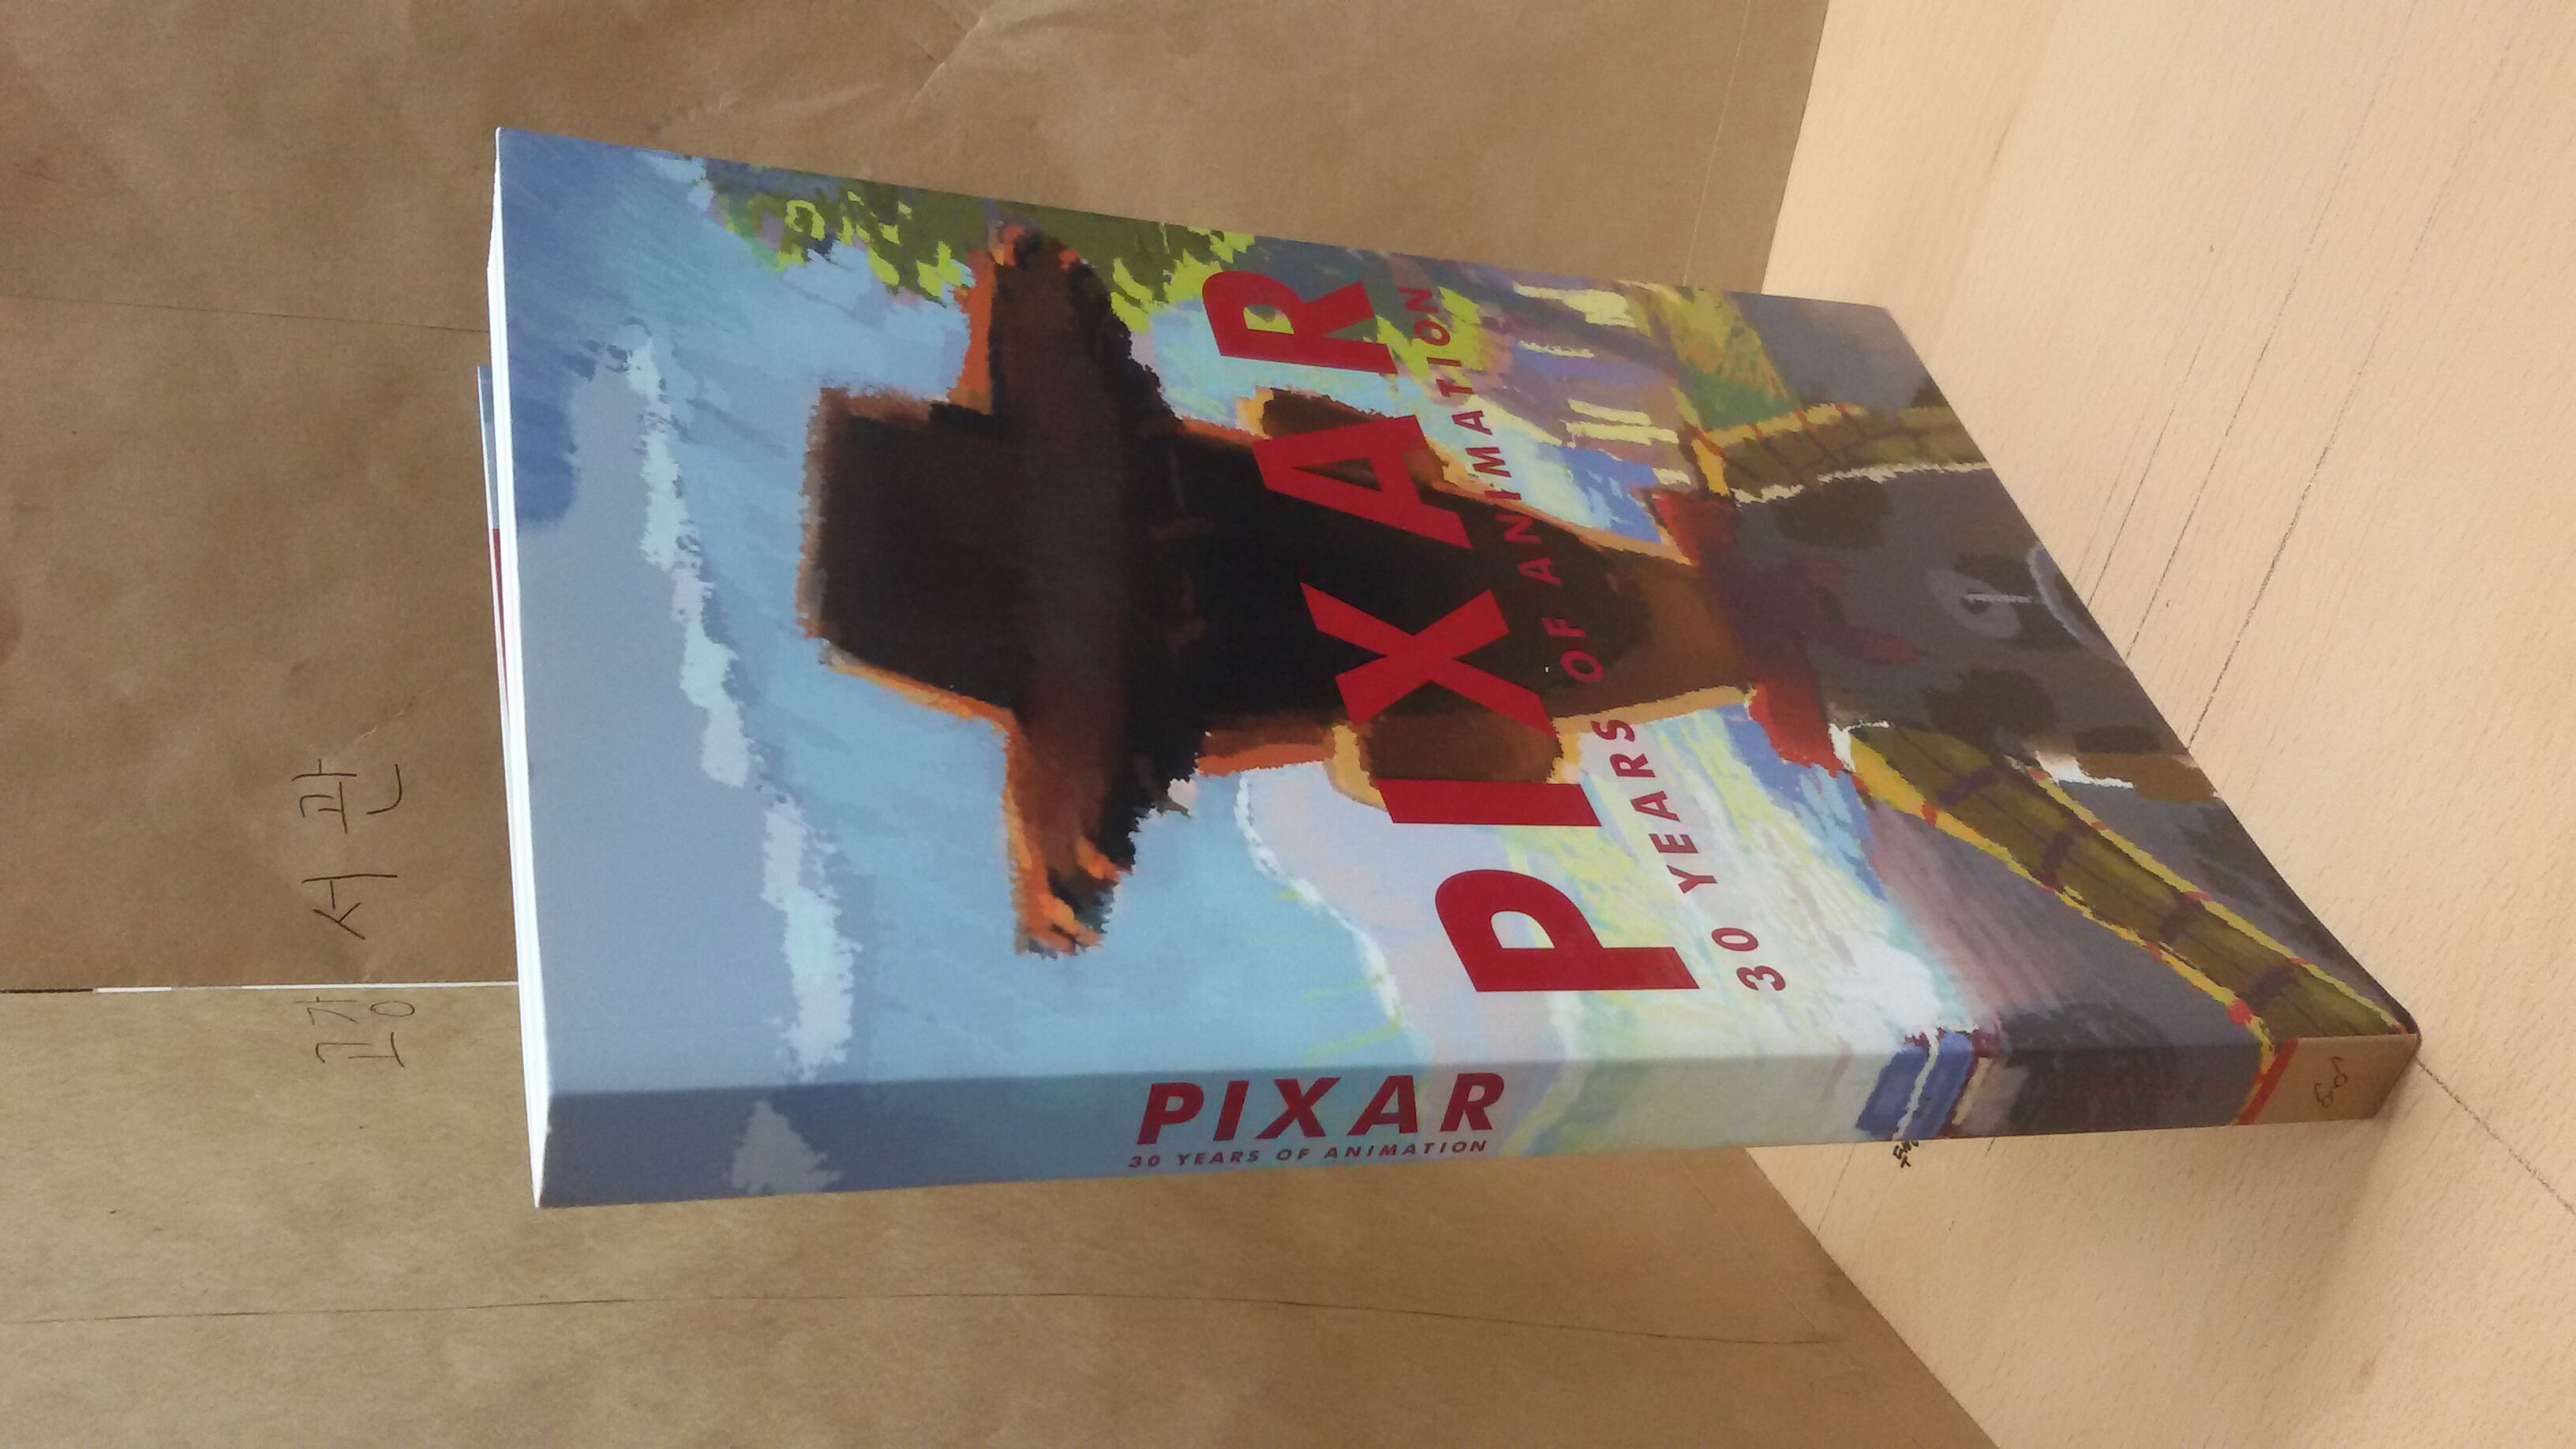 Pixar 30 years of animation 애니메이션 30주년 특별전 